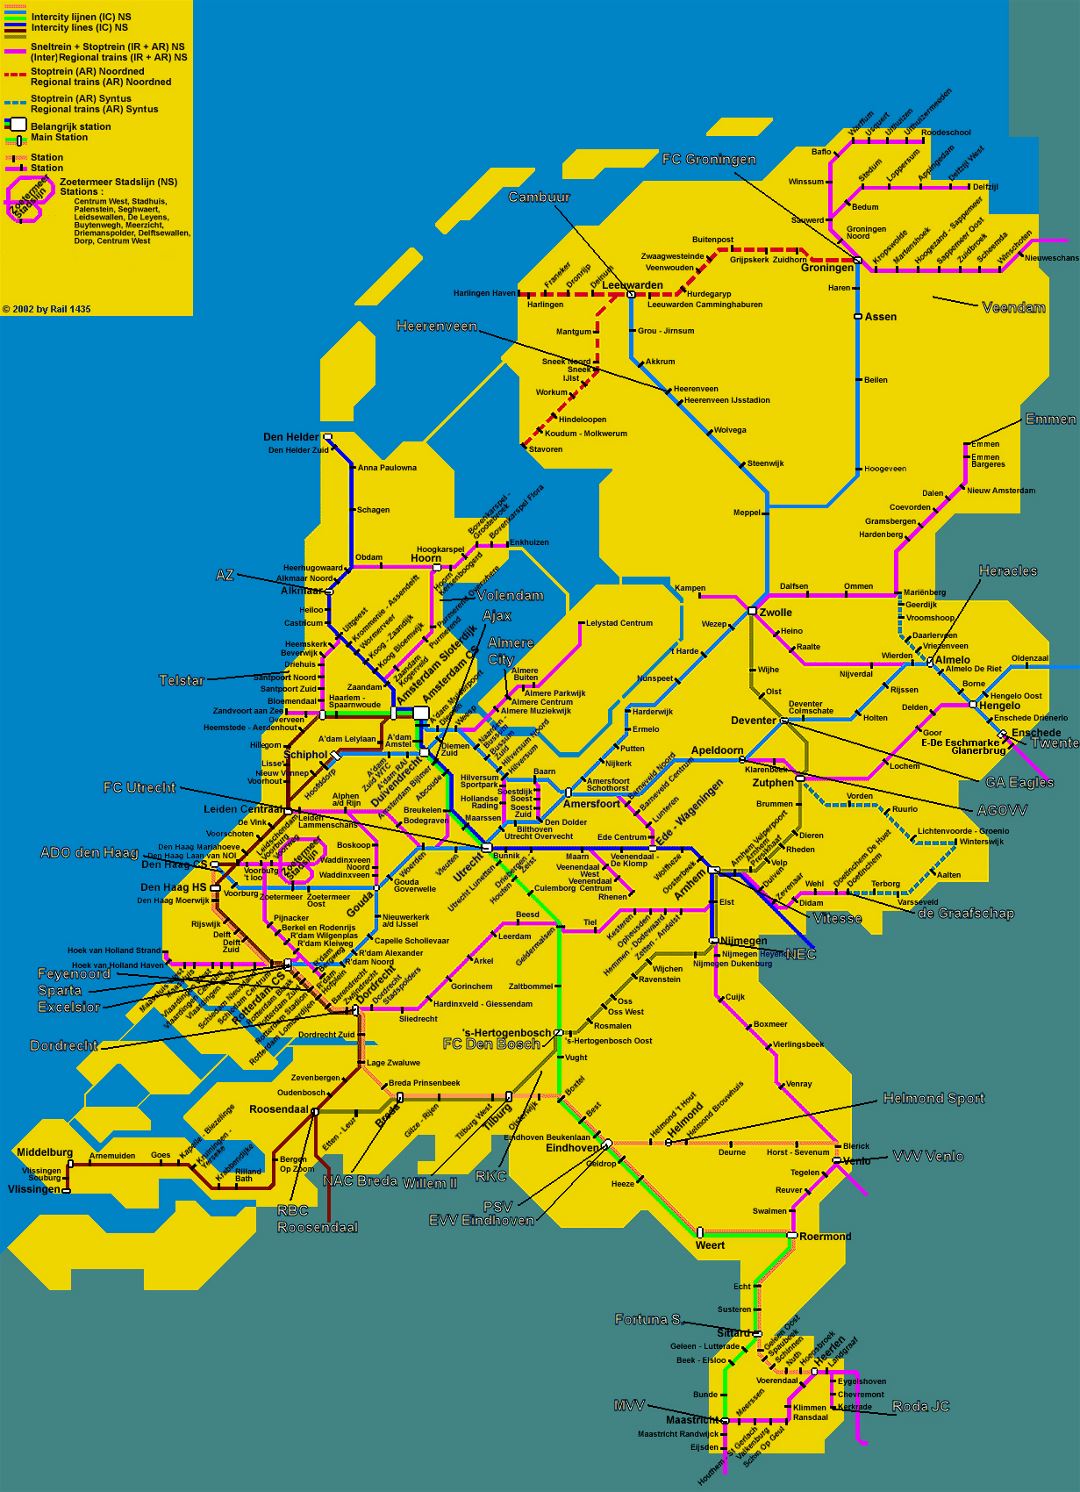 Detallado mapa de tren de los Países Bajos (Holanda)